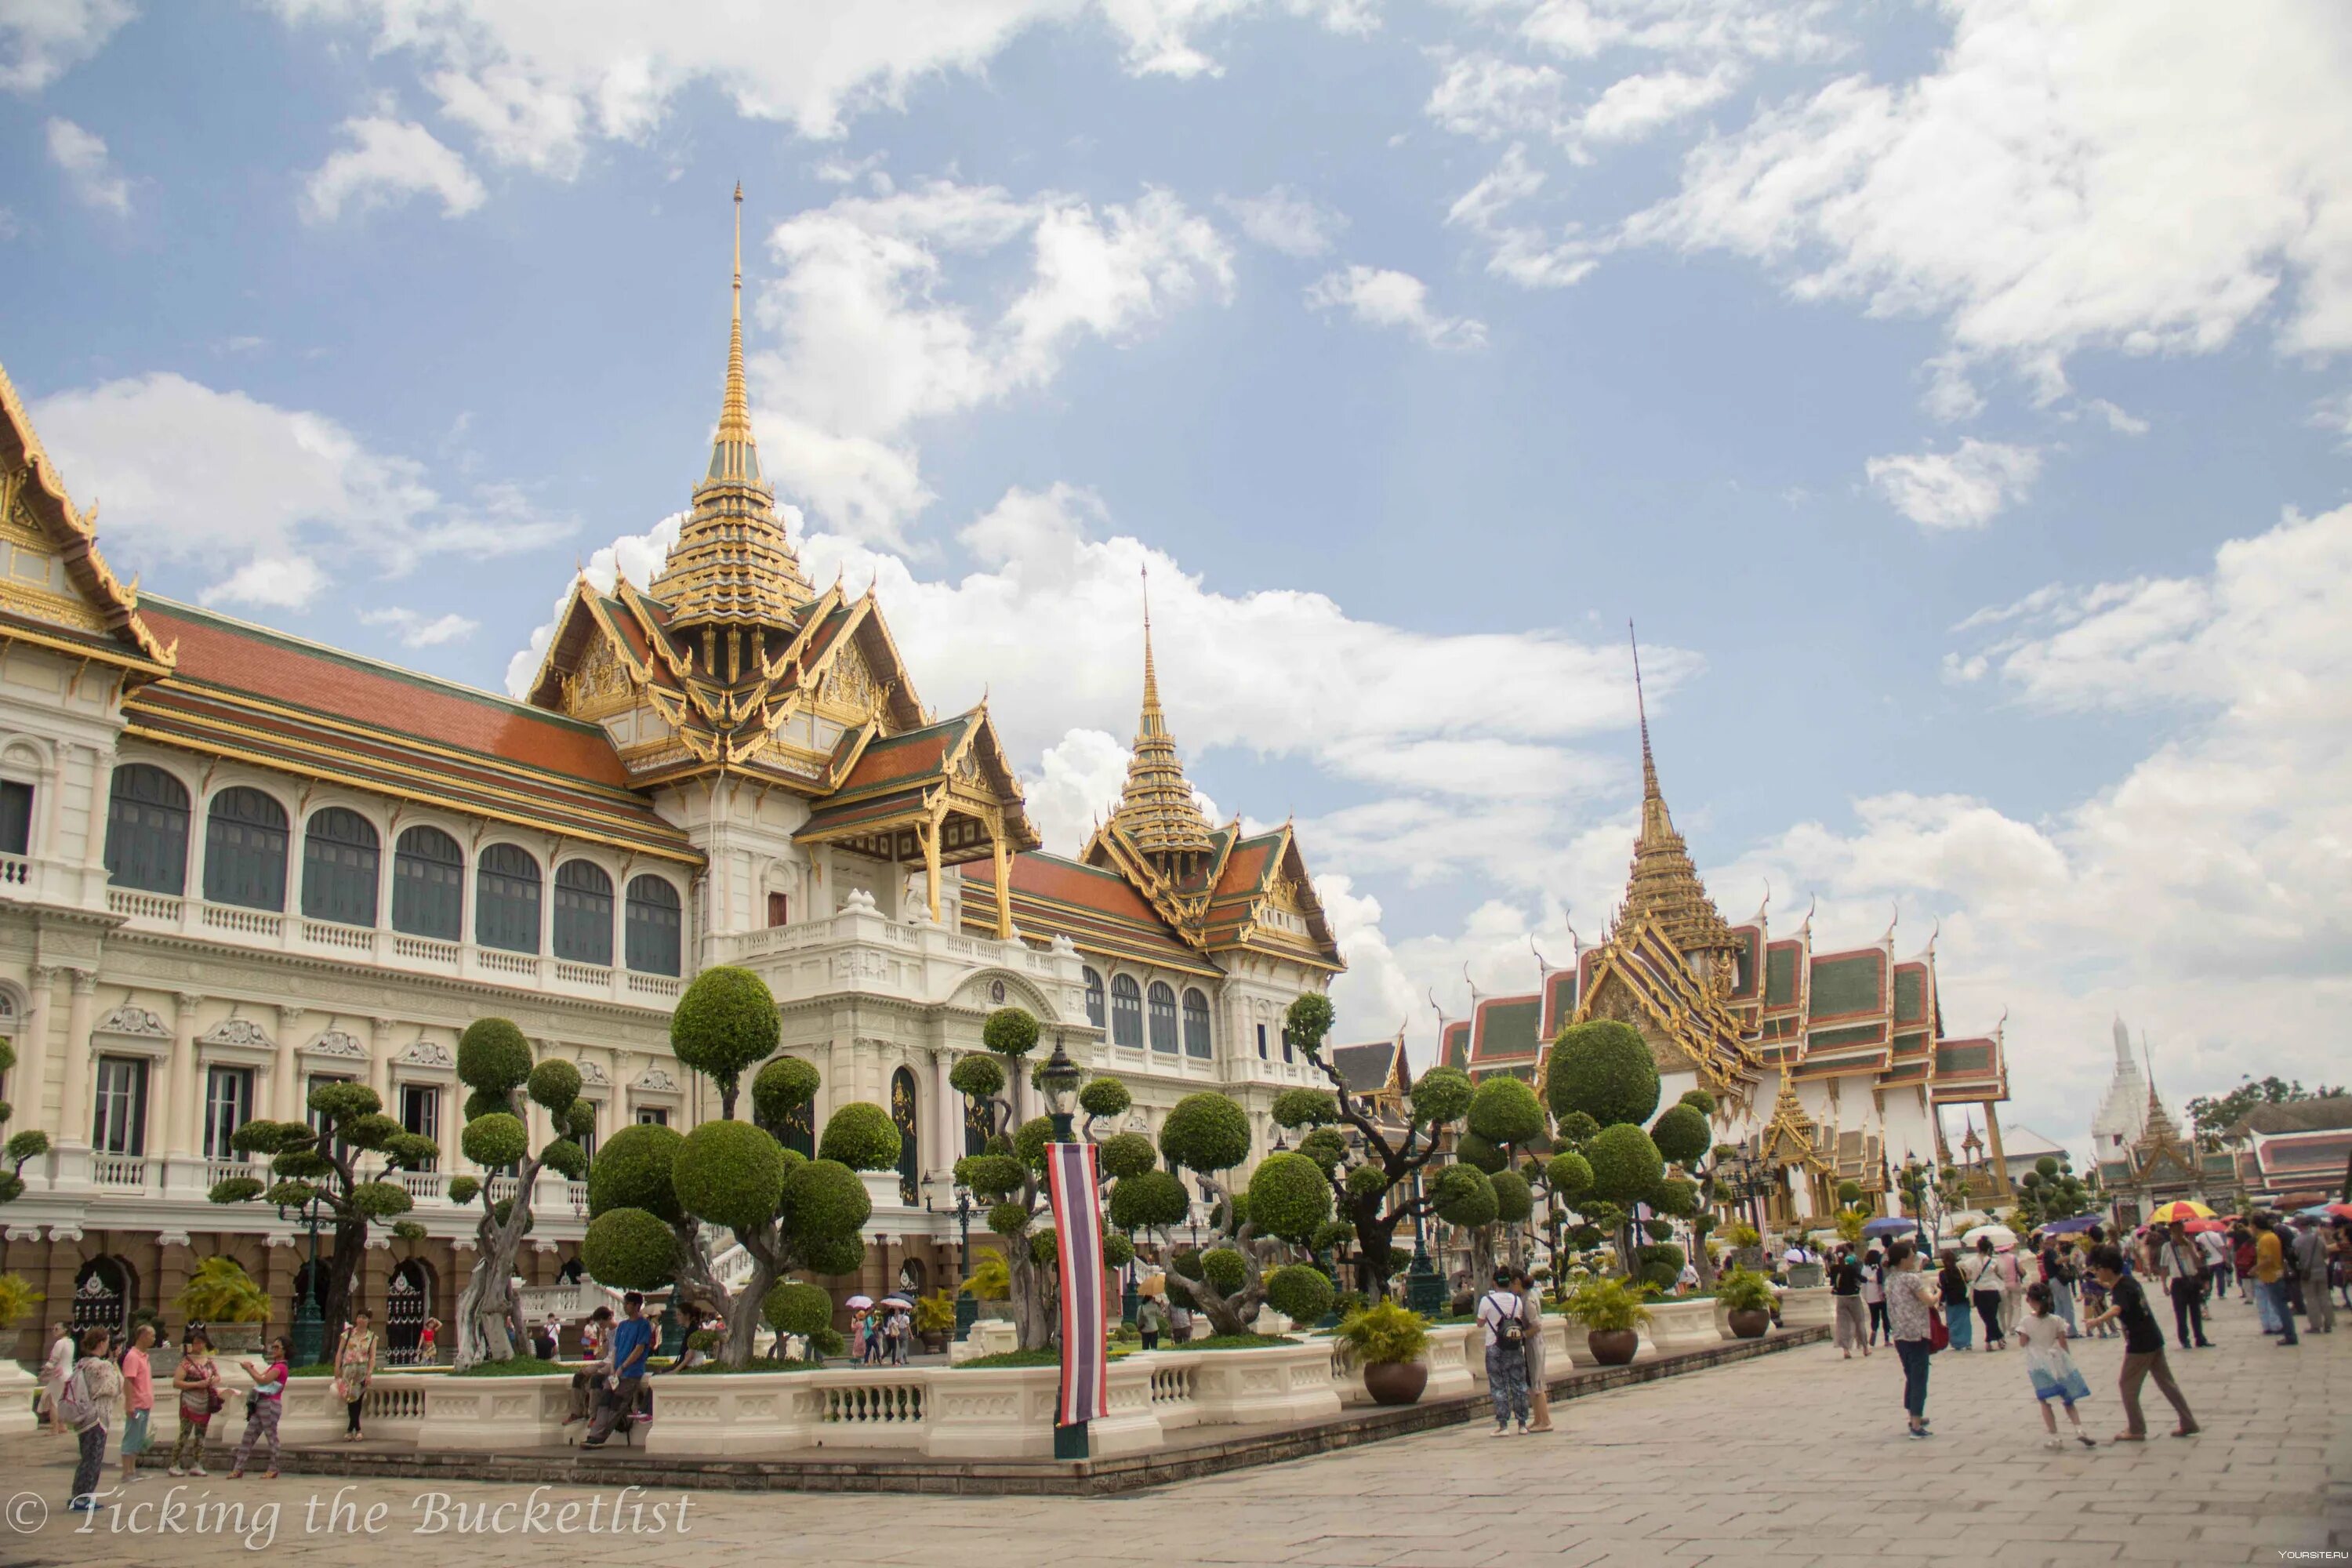 Красивый бангкок. Королевский дворец в Бангкоке. Столица Тайланда. Бангкок столица Таиланда. Королевский дворец — резиденция тайского короля Бангкок.